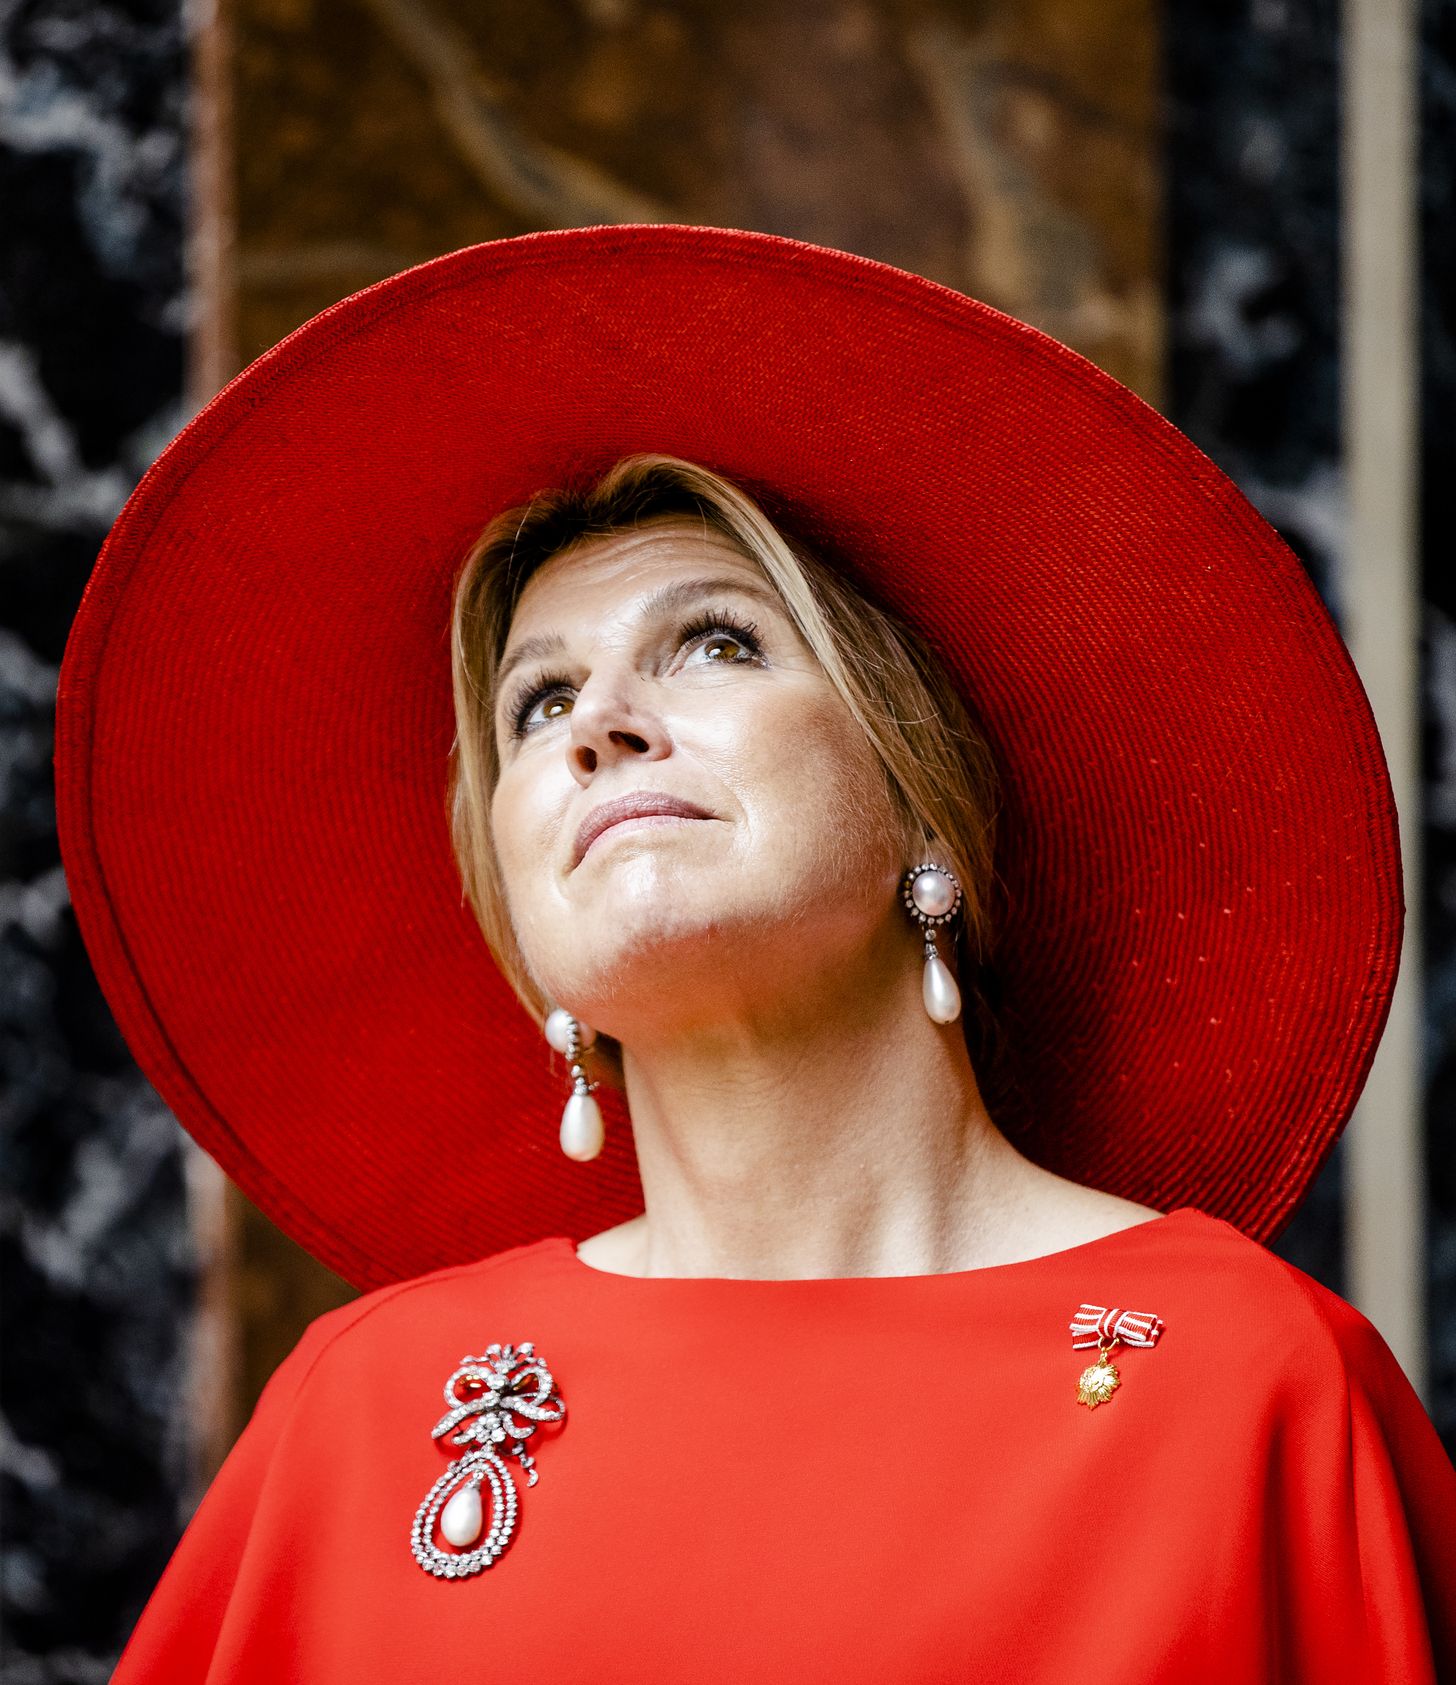 Inspireerde koningin Máxima déze Belgische prinses met een kleurrijke jurk?